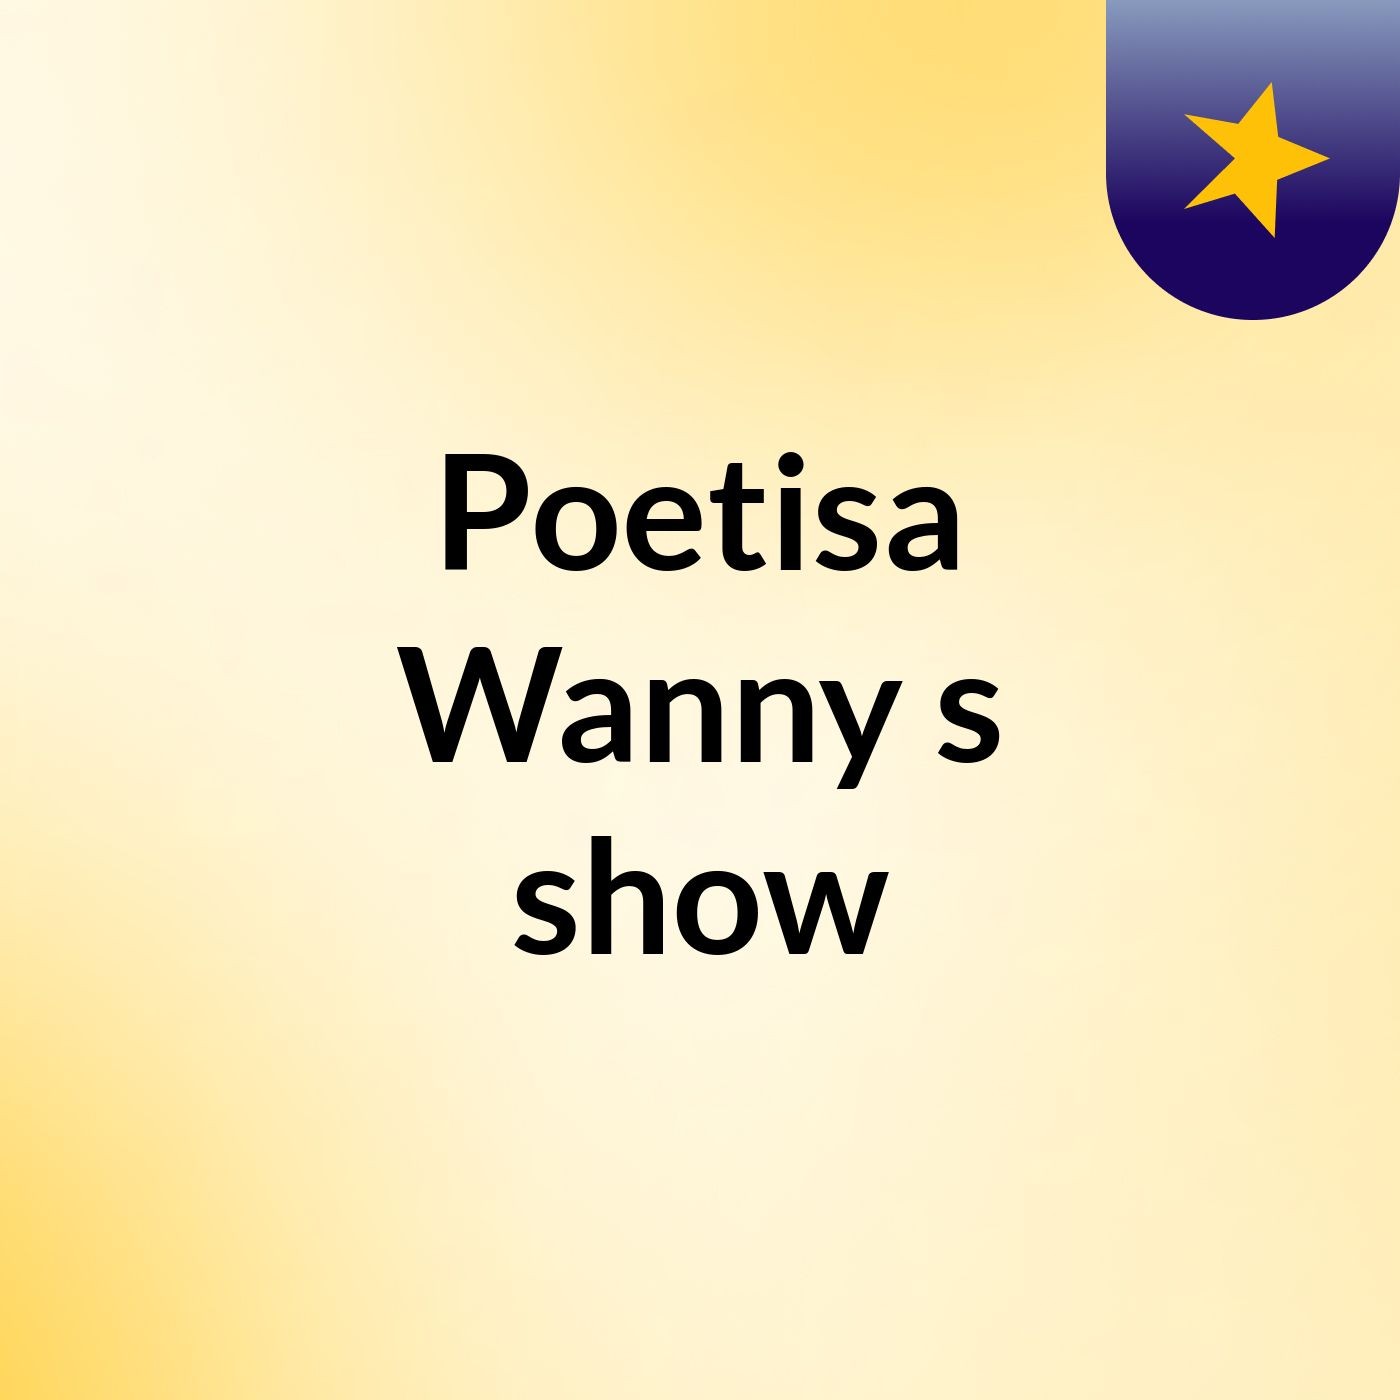 Poetisa Wanny's show